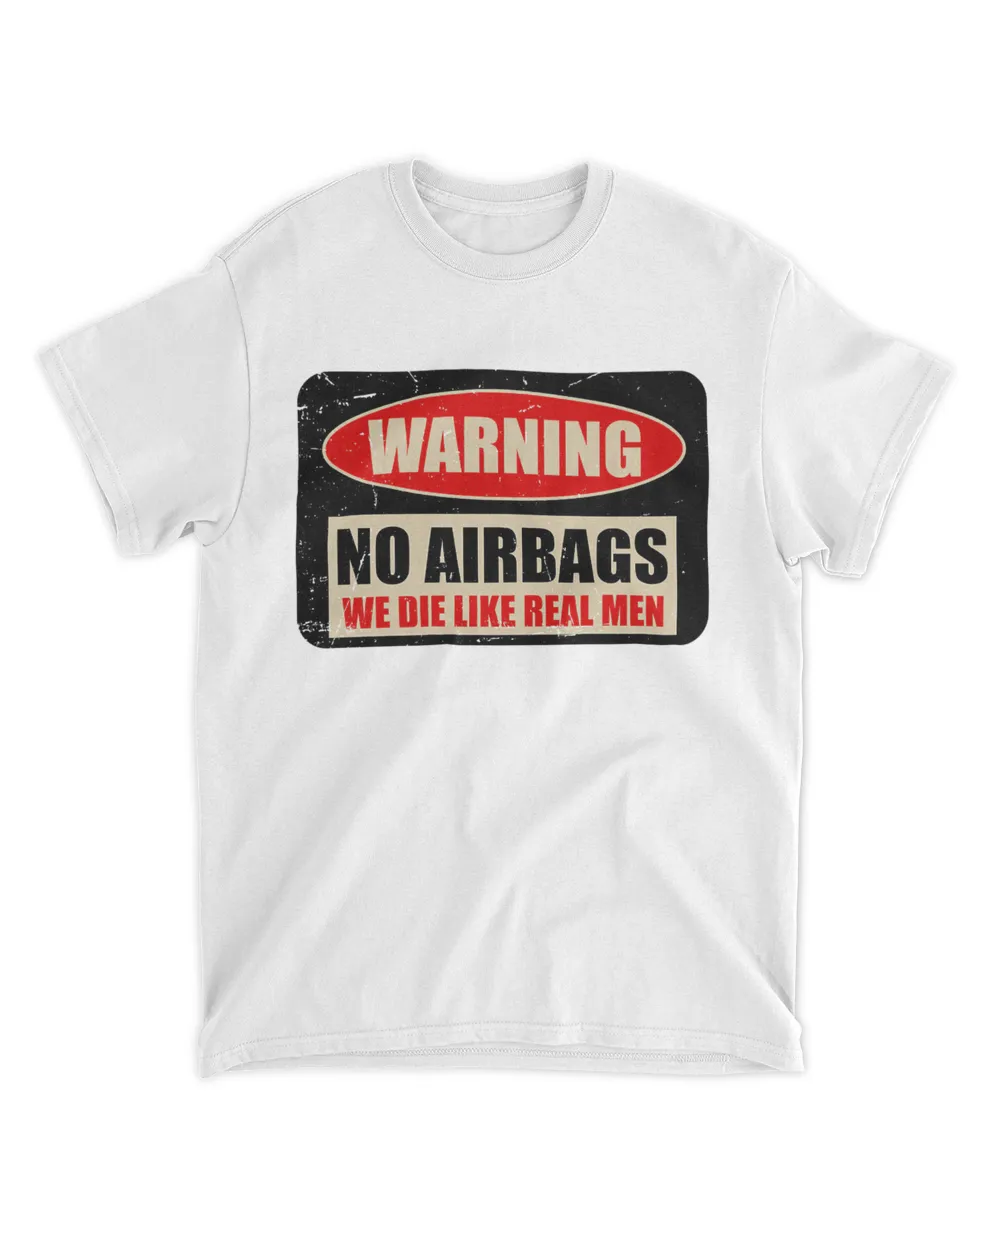 Warning No Airbags We Die Like Real Men Shirt